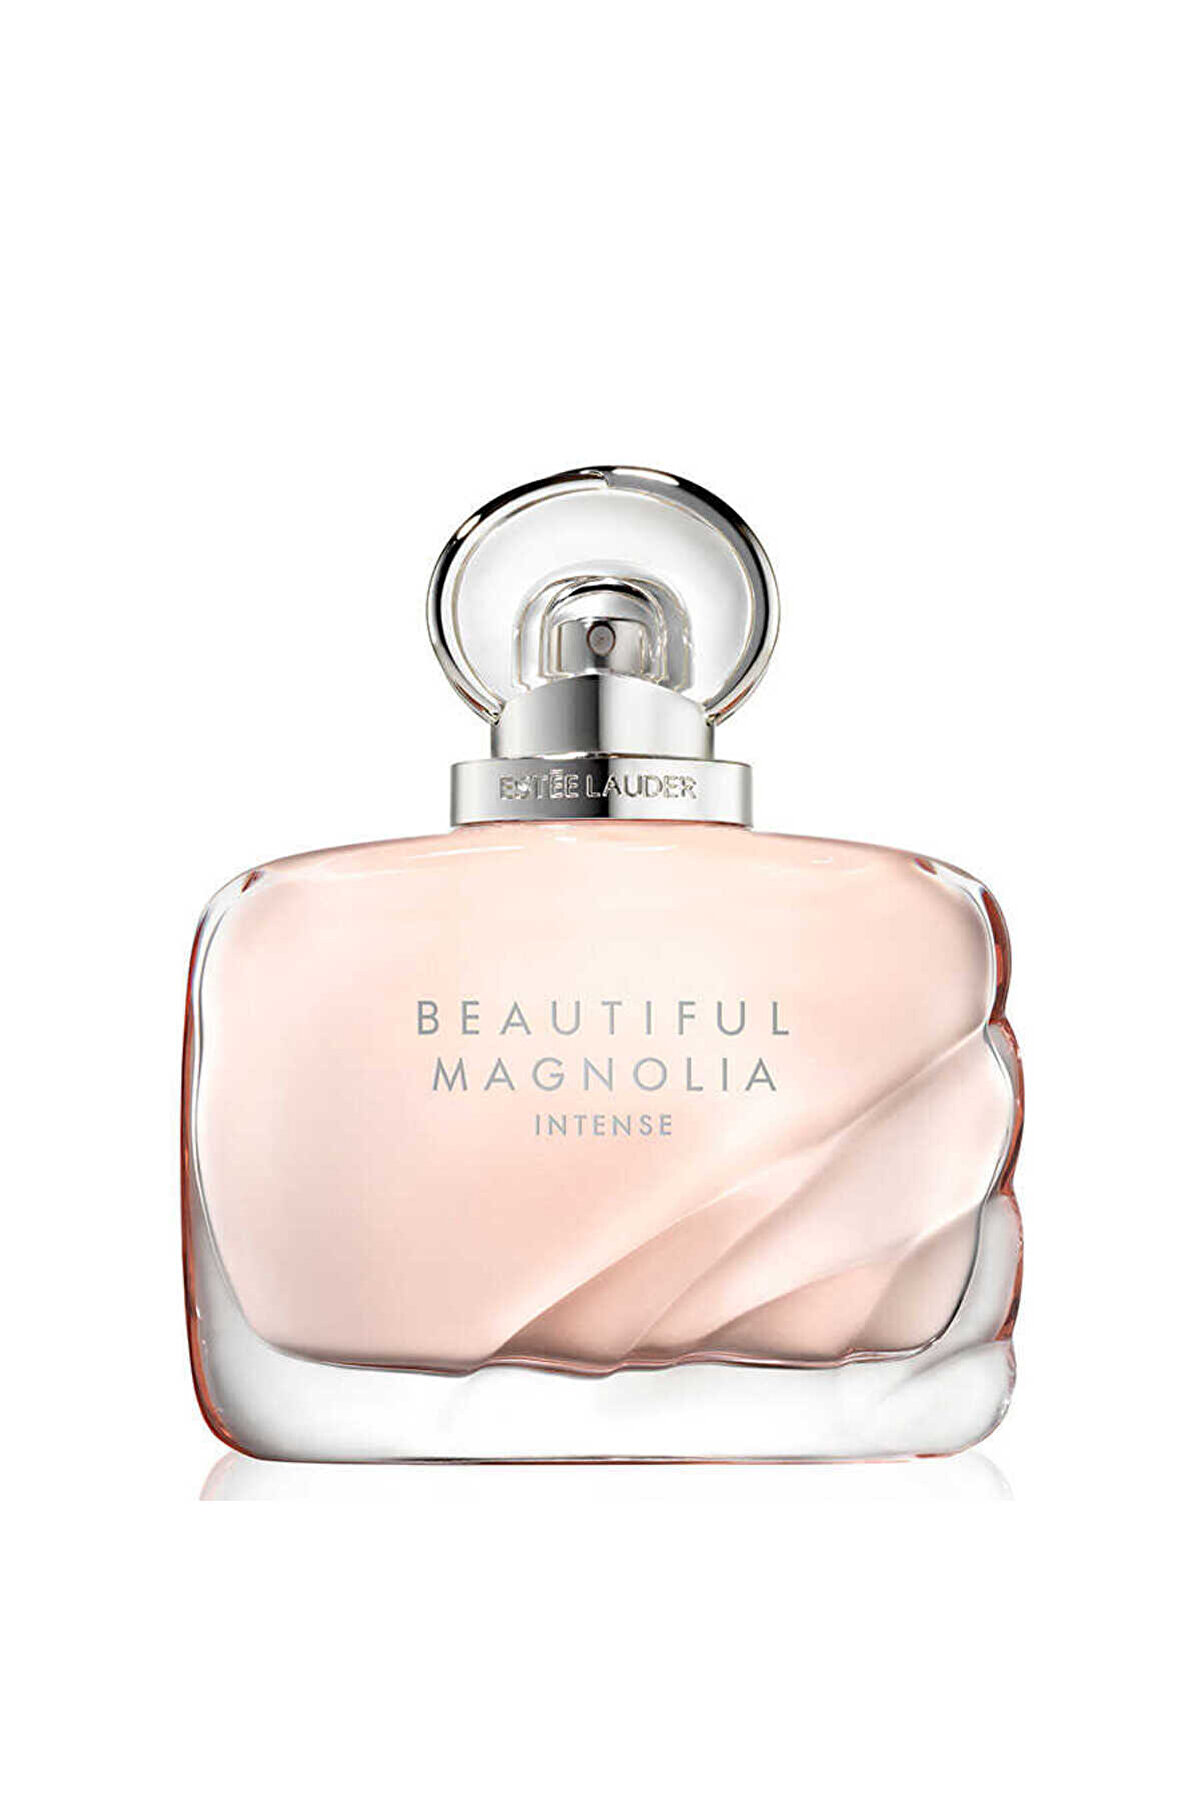 Estee Lauder Beautiful Magnolia Intense Edp 100 ml